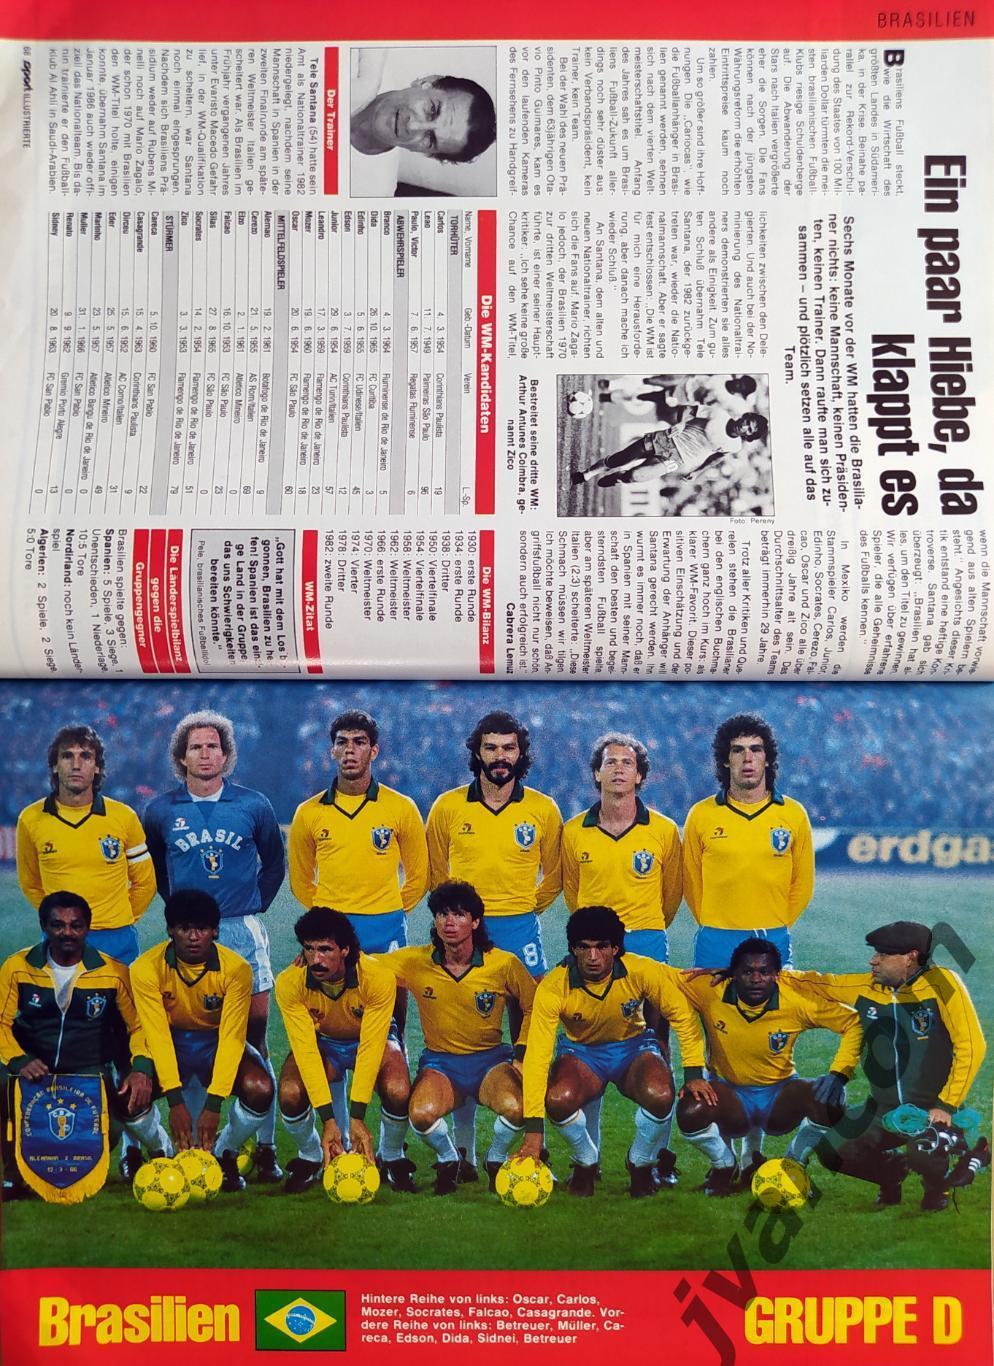 SPORT ILLUSTRIERTE. Чемпионат Мира по футболу 1986 года. Превью участников. 2